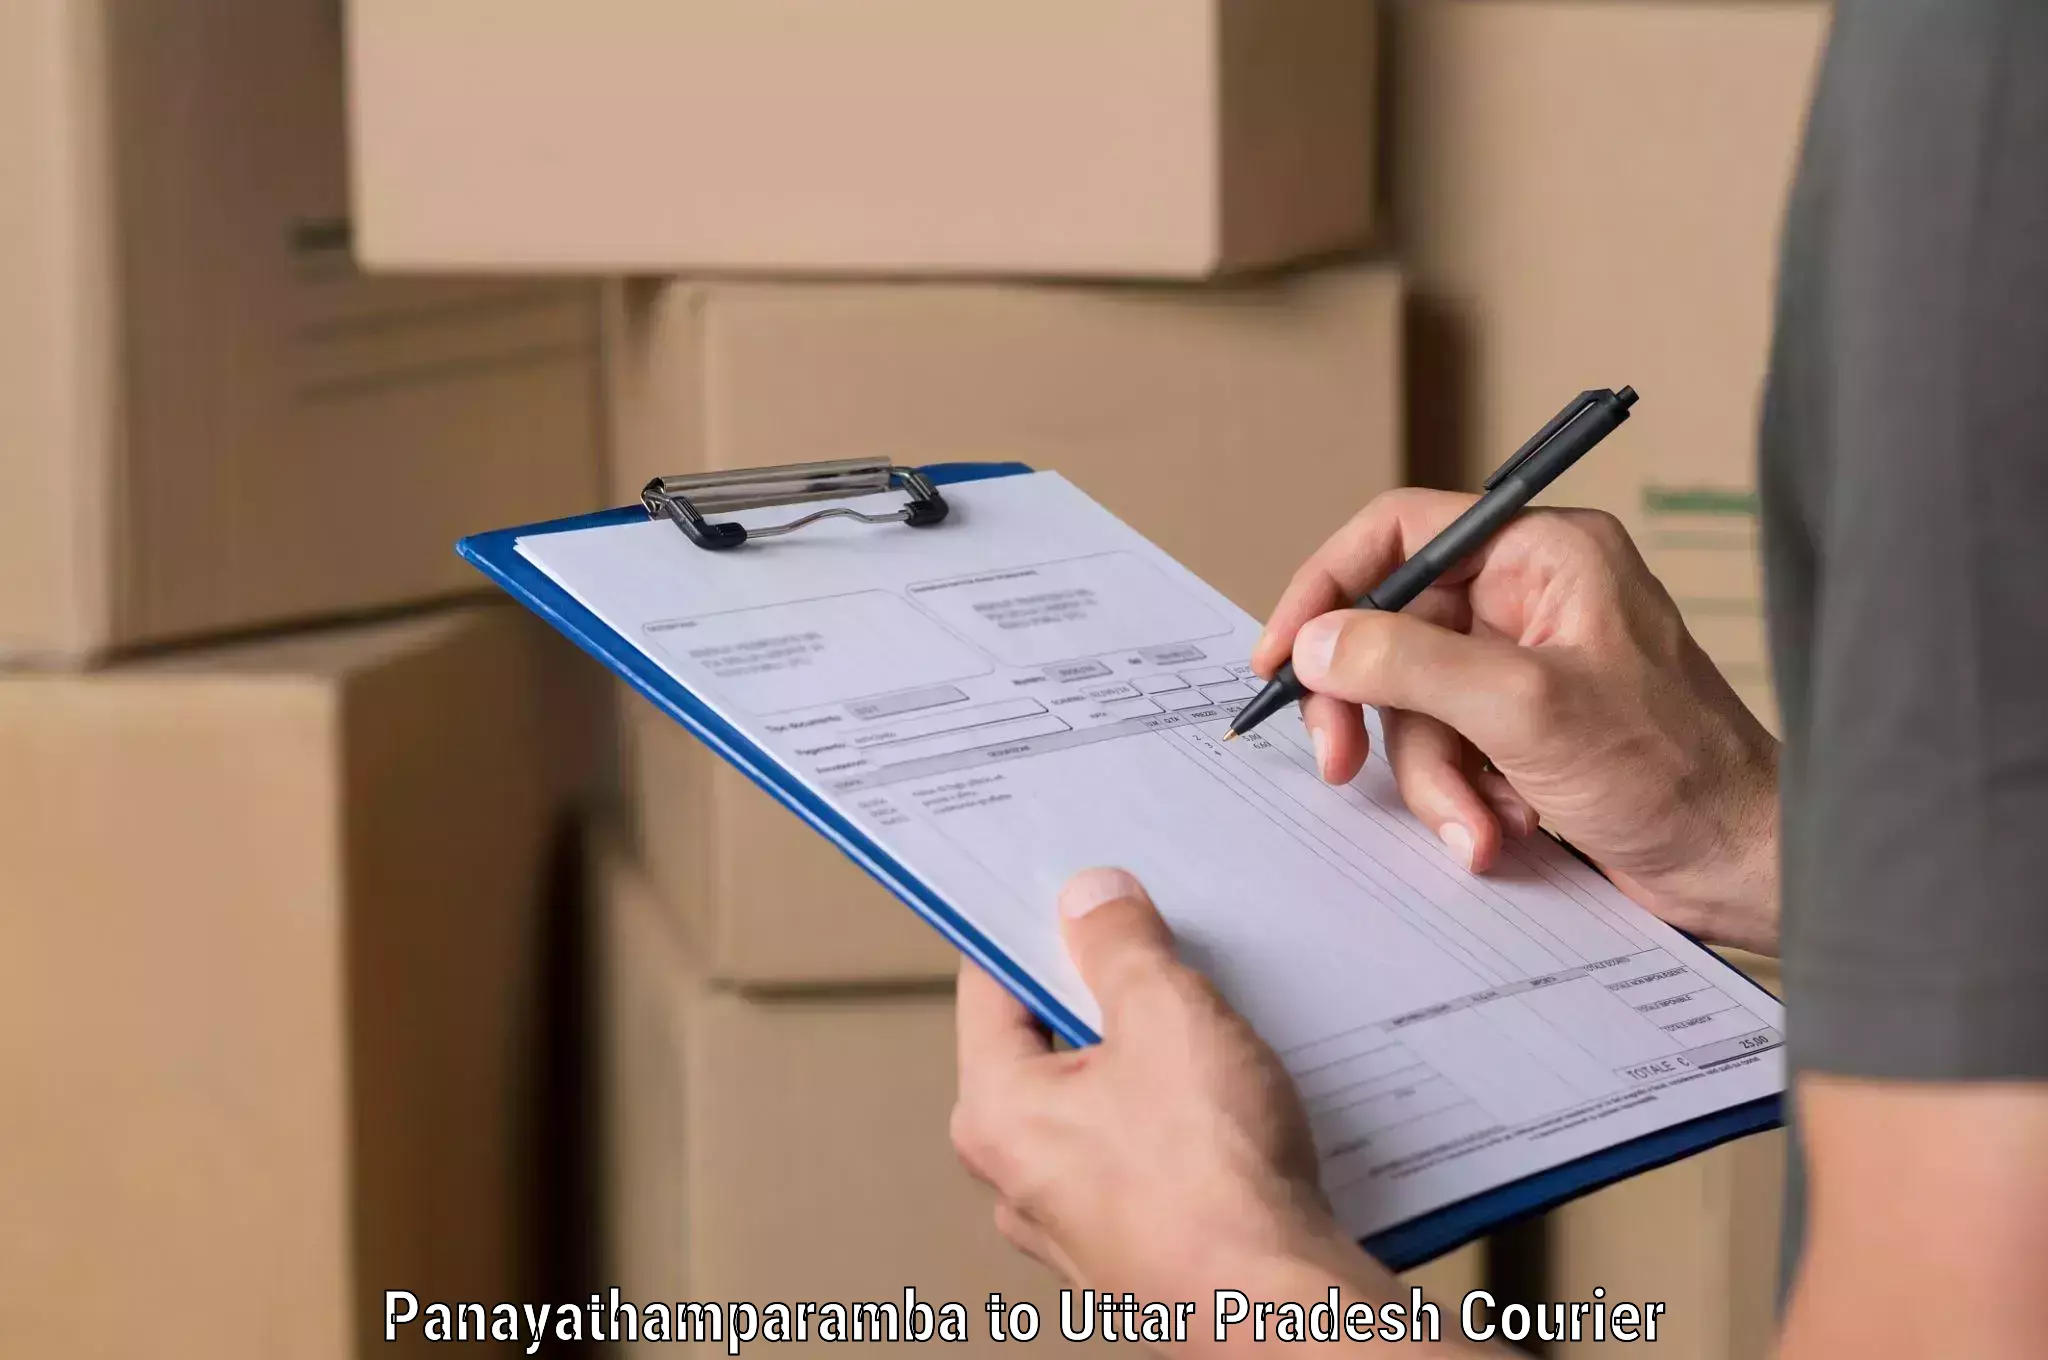 Quick parcel dispatch Panayathamparamba to Rampur Maniharan